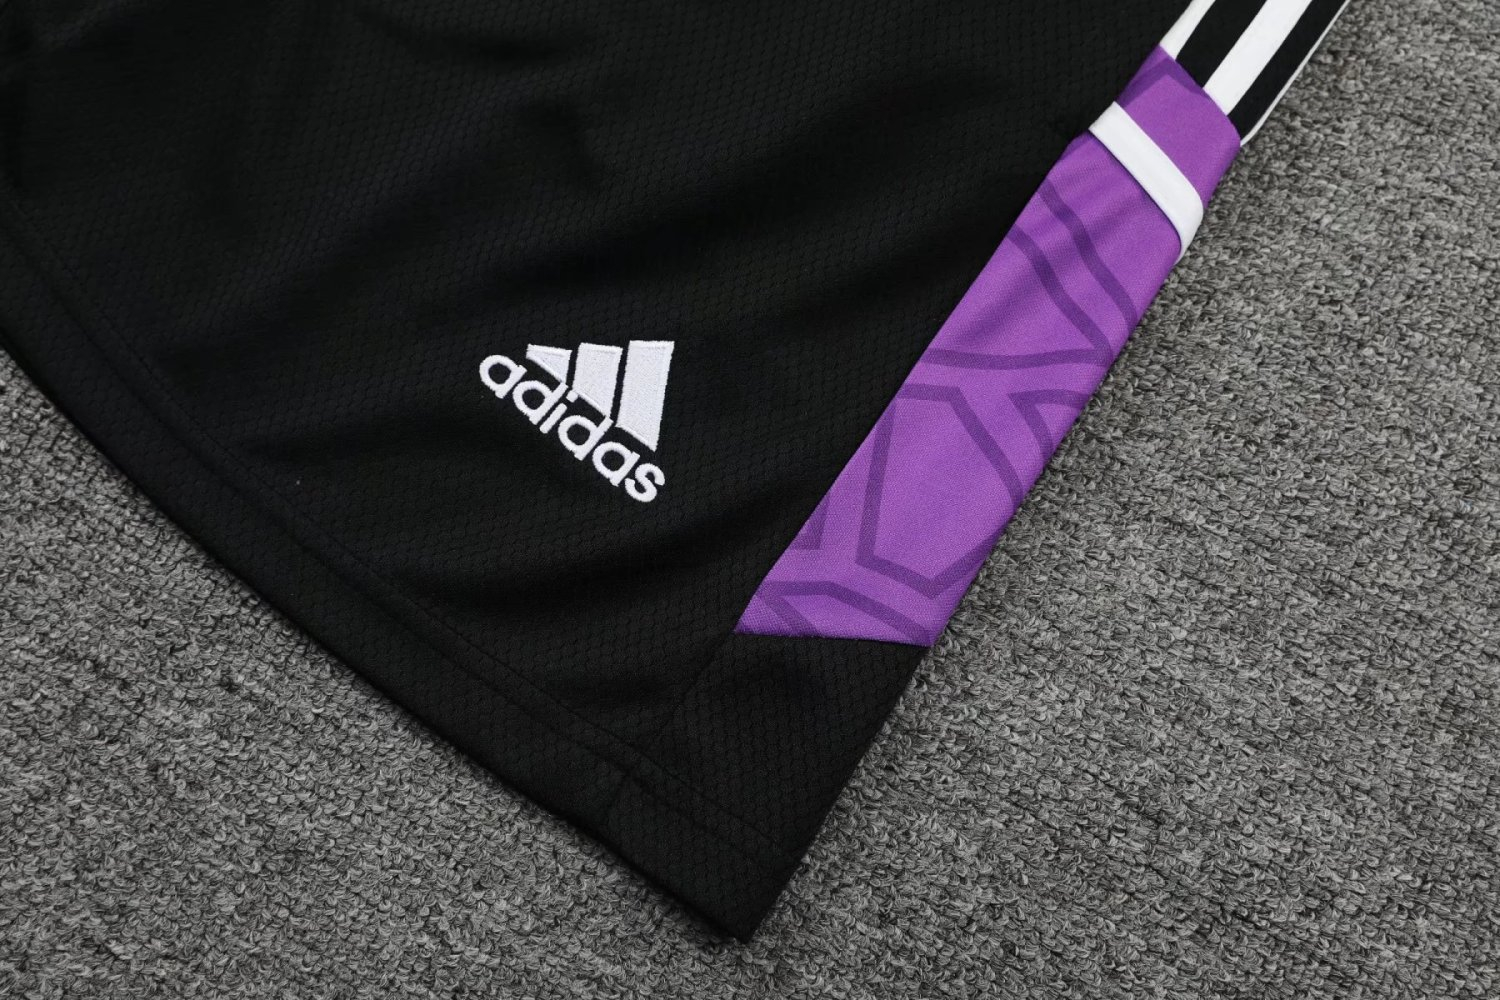 22-23 Real Madrid Black Soccer Football Training Kit (Singlet + Shorts) Man